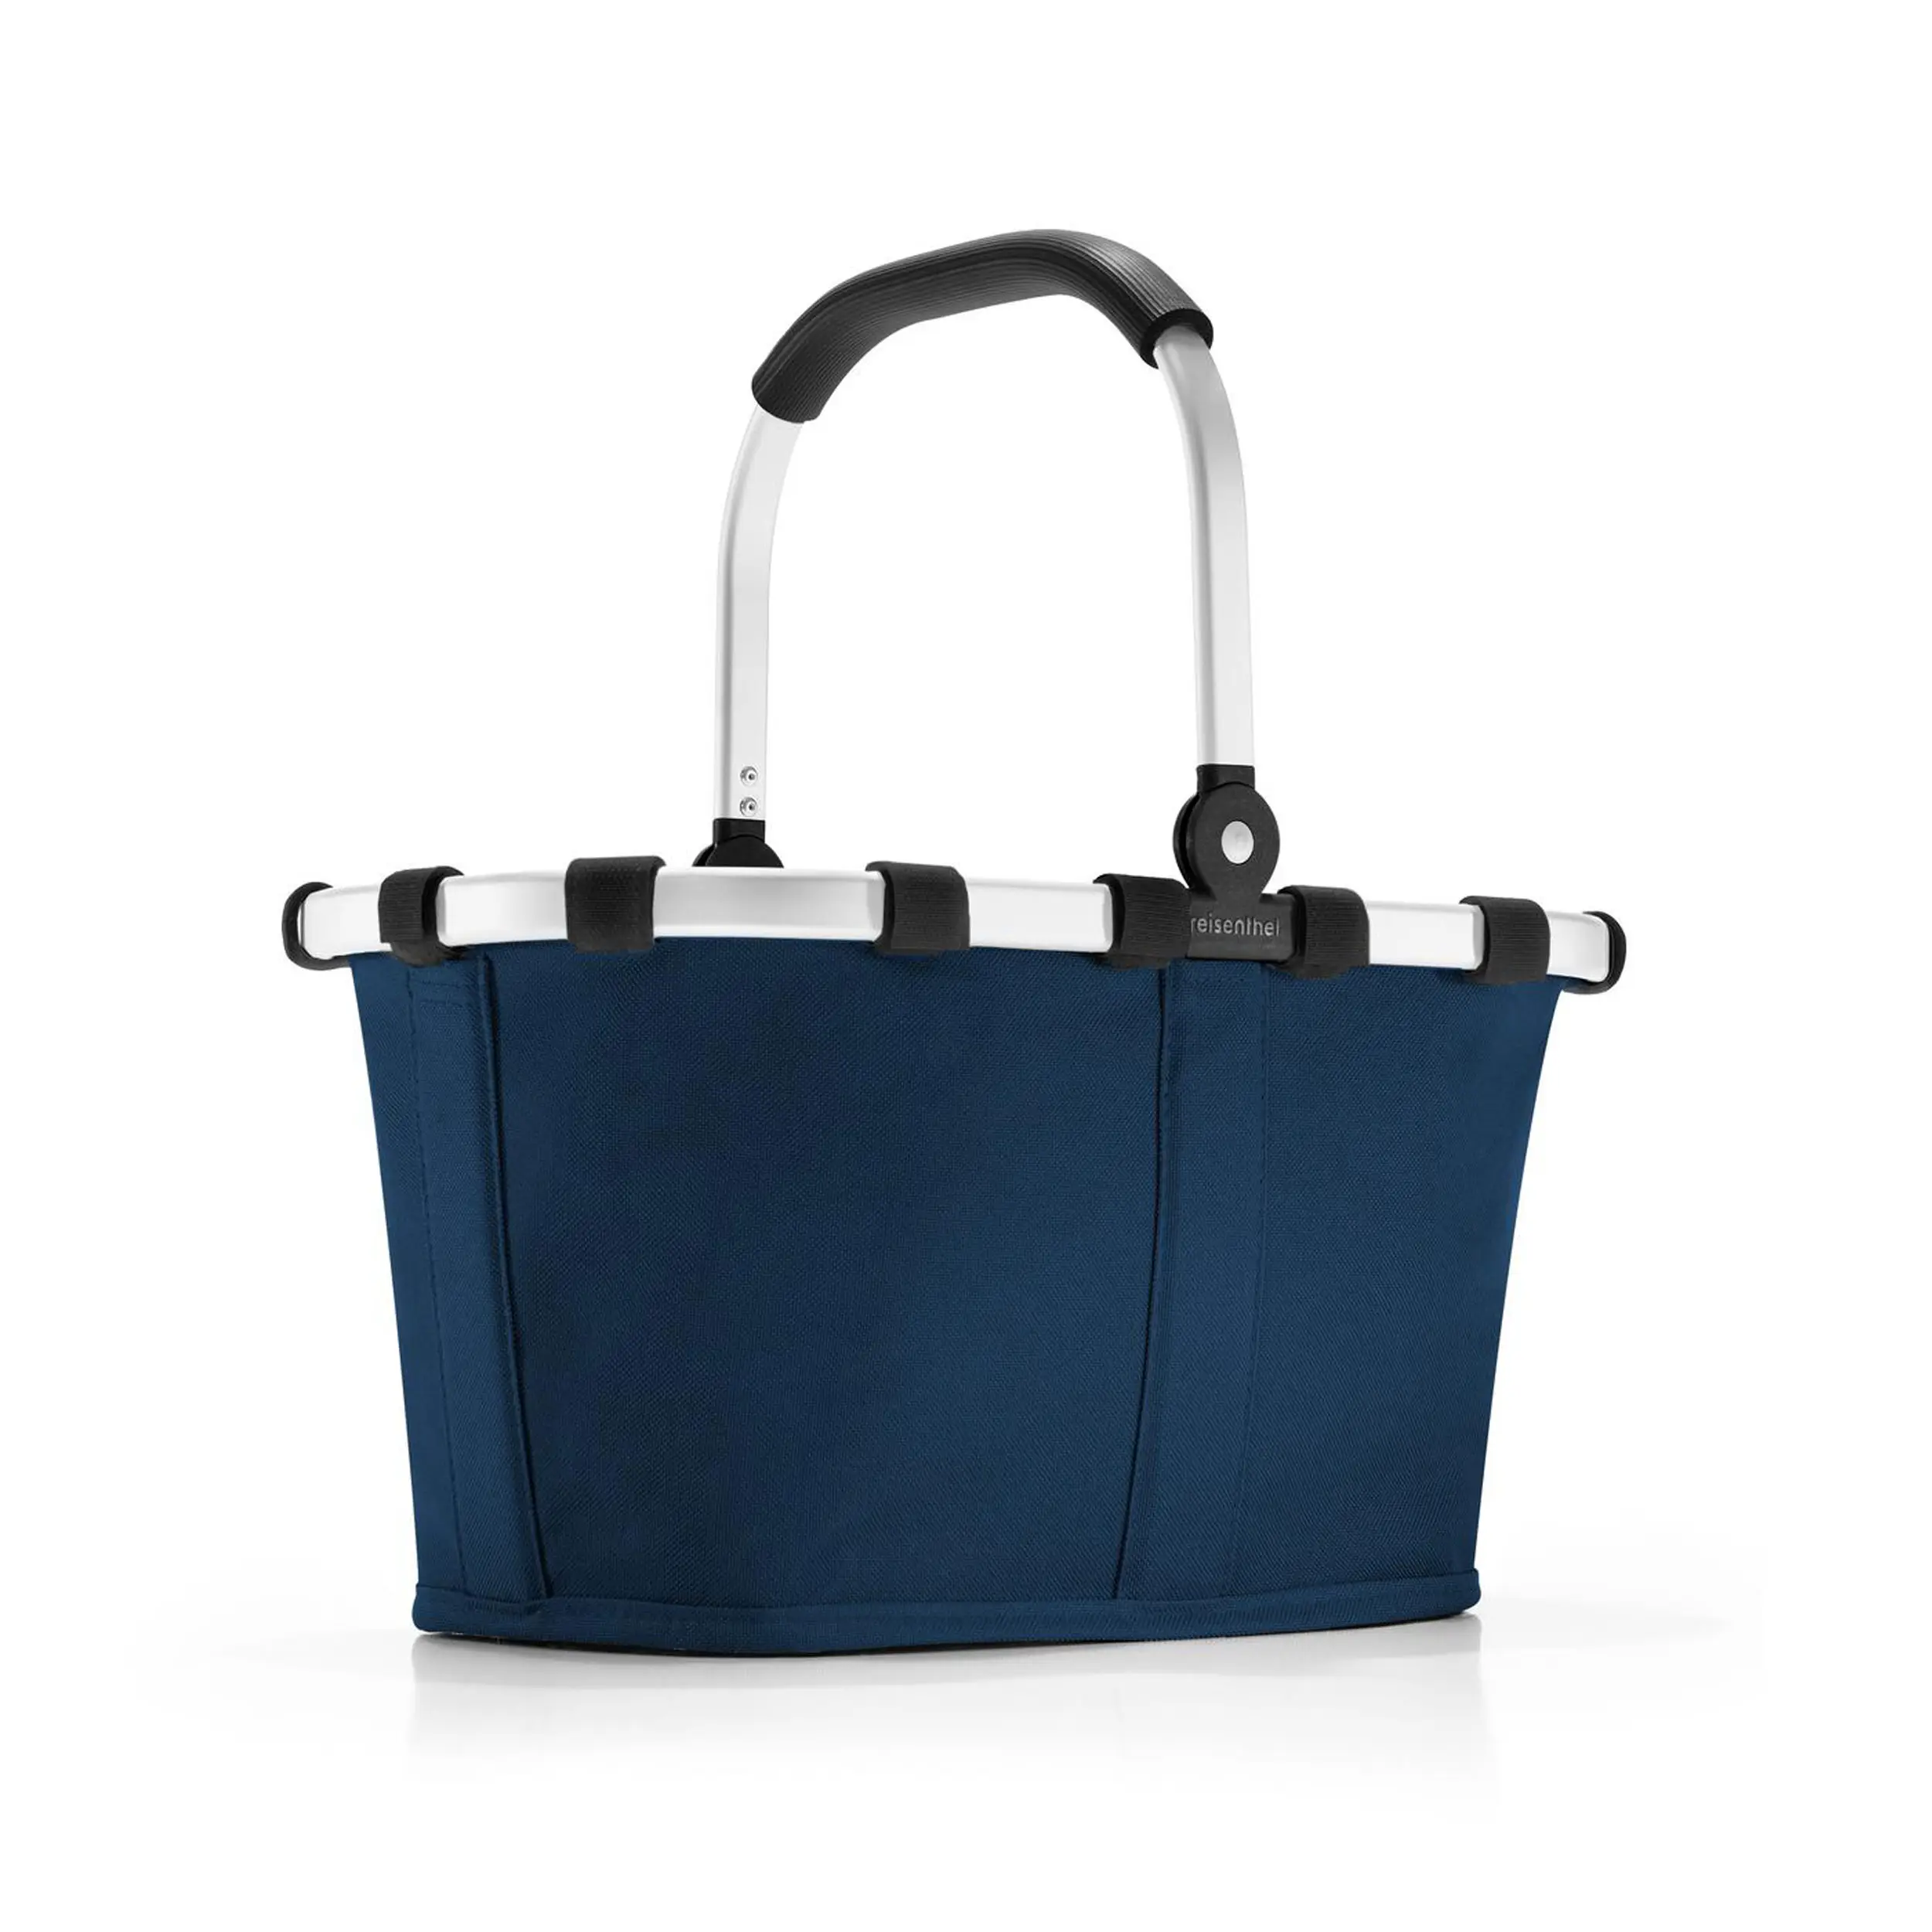 Einkaufskorb carrybag XS Dark Blue